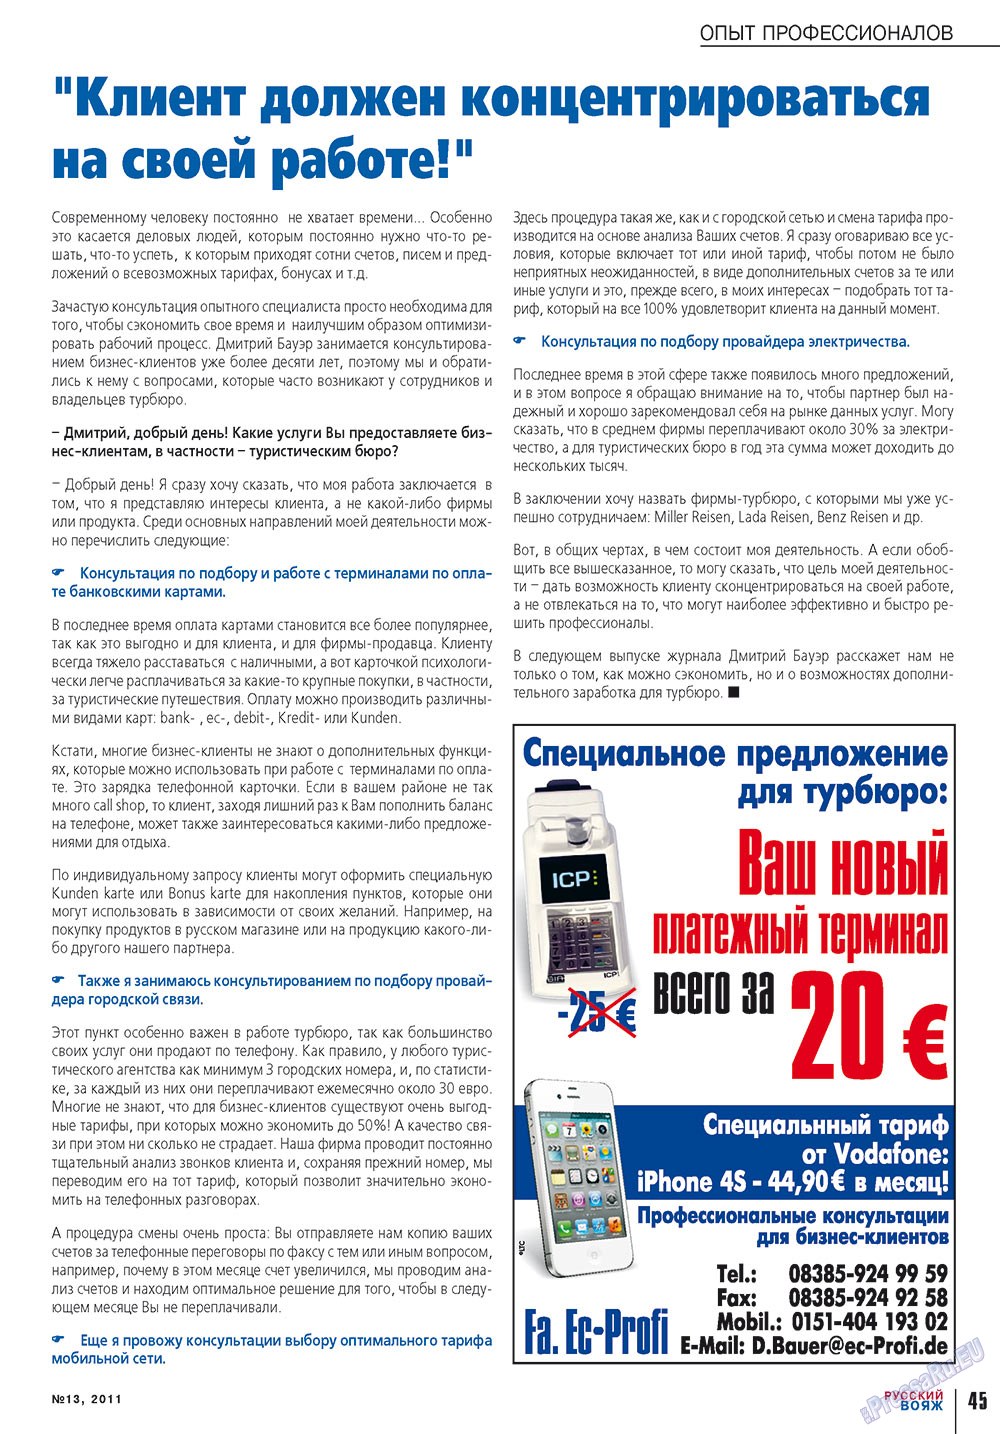 Русский вояж (журнал). 2011 год, номер 13, стр. 45